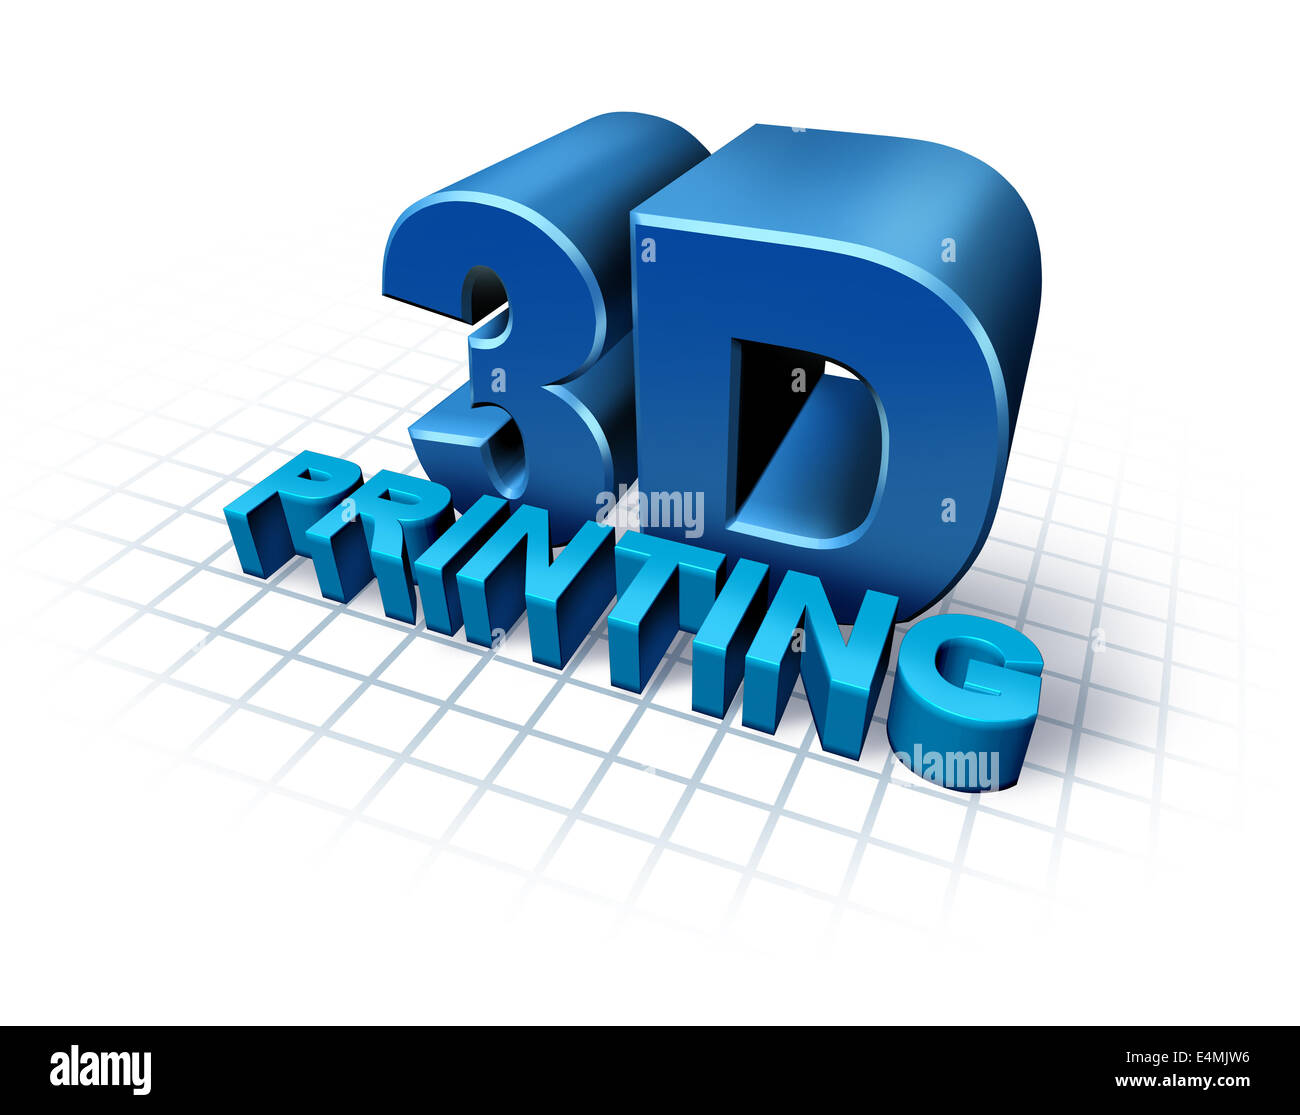 Concepto de impresión en 3D con texto tridimensional como un símbolo de la nueva tecnología de impresión para duplicar objetos producto o prototipo replicador industrial,utilizando robots y futuro proceso de fabricación. Foto de stock